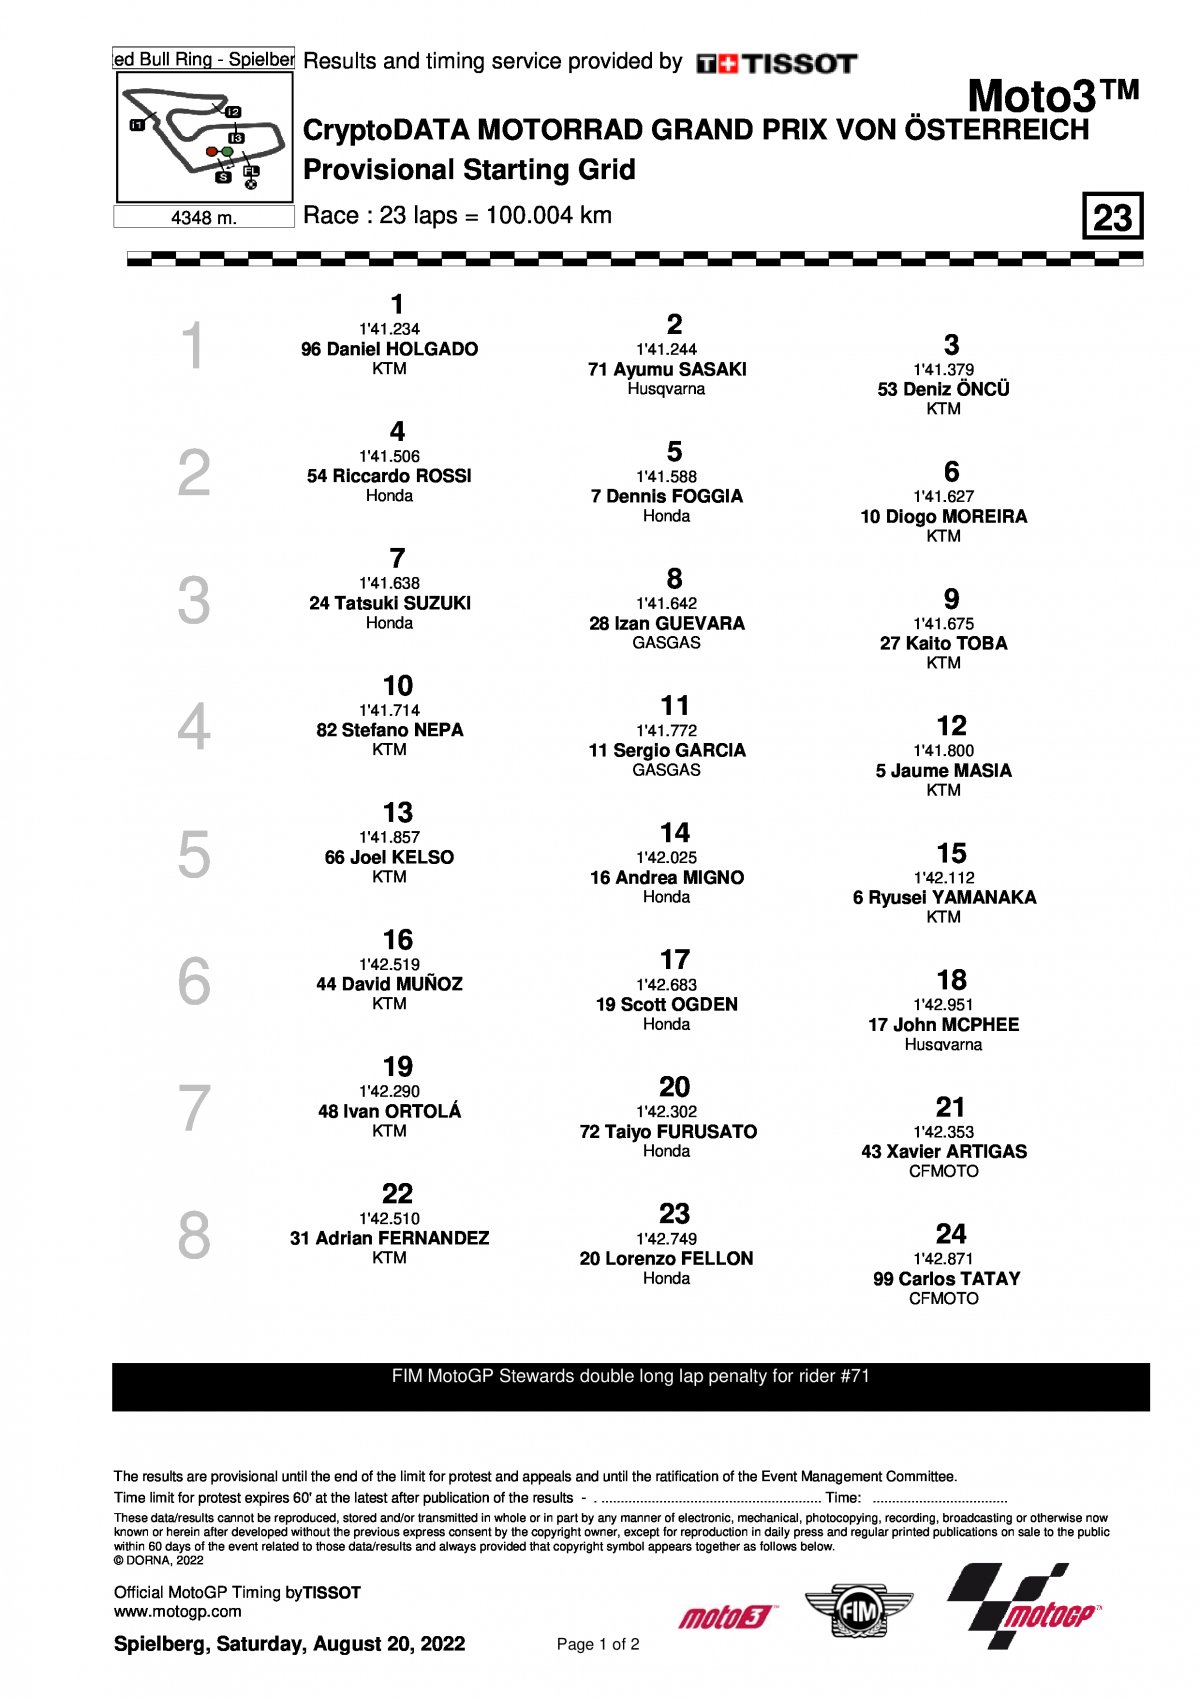 Стартовая решетка Гран-При Австрии в классе Moto3 (21/08/2022)